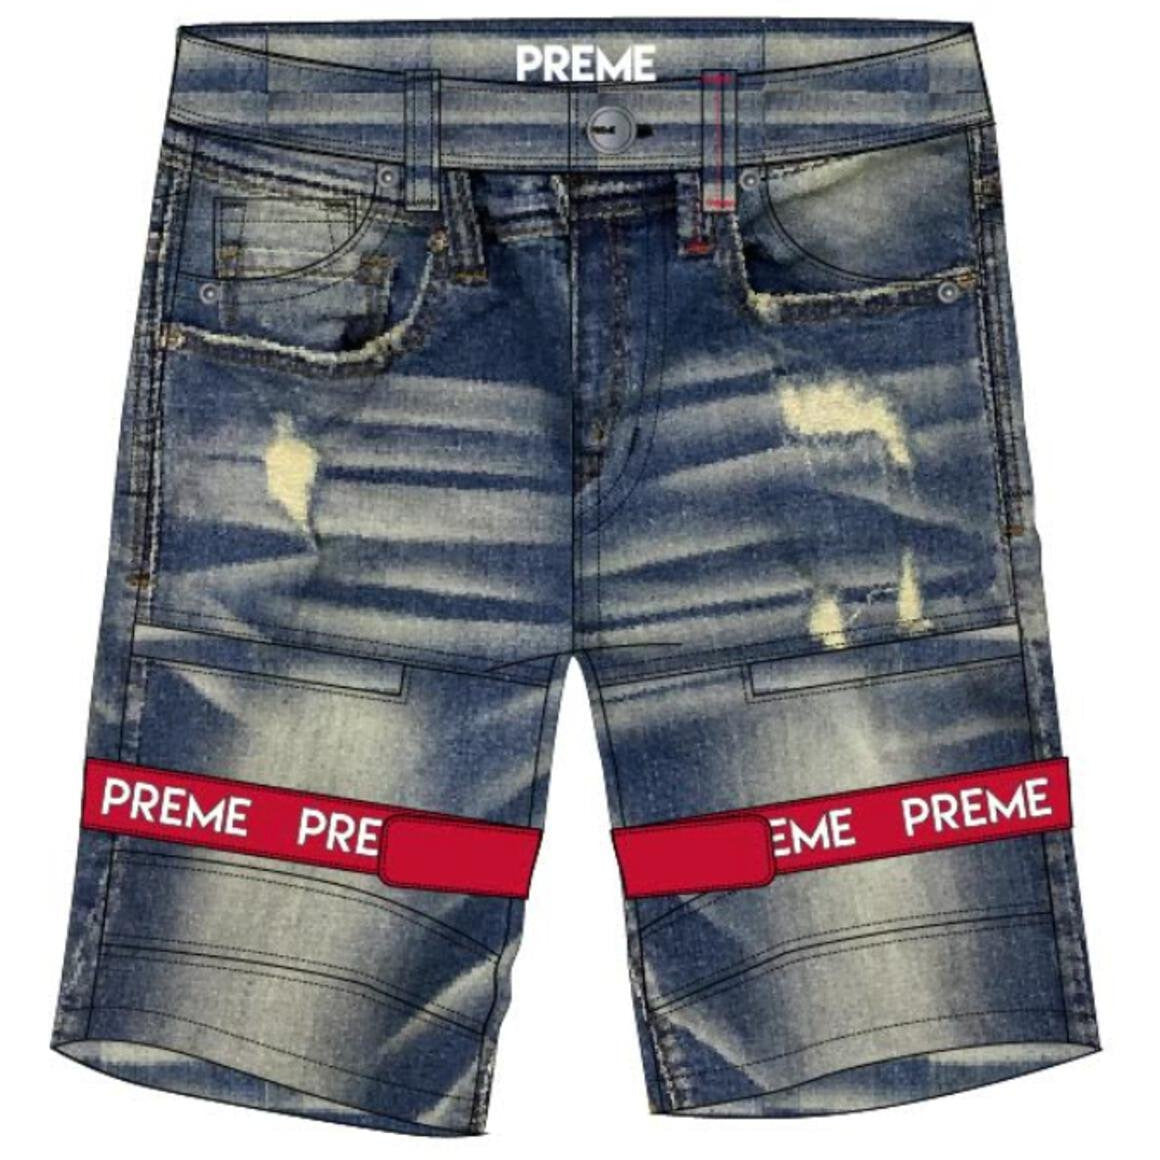 Preme Shorts Indigo w/Red Preme Strap (PR-WB-846)